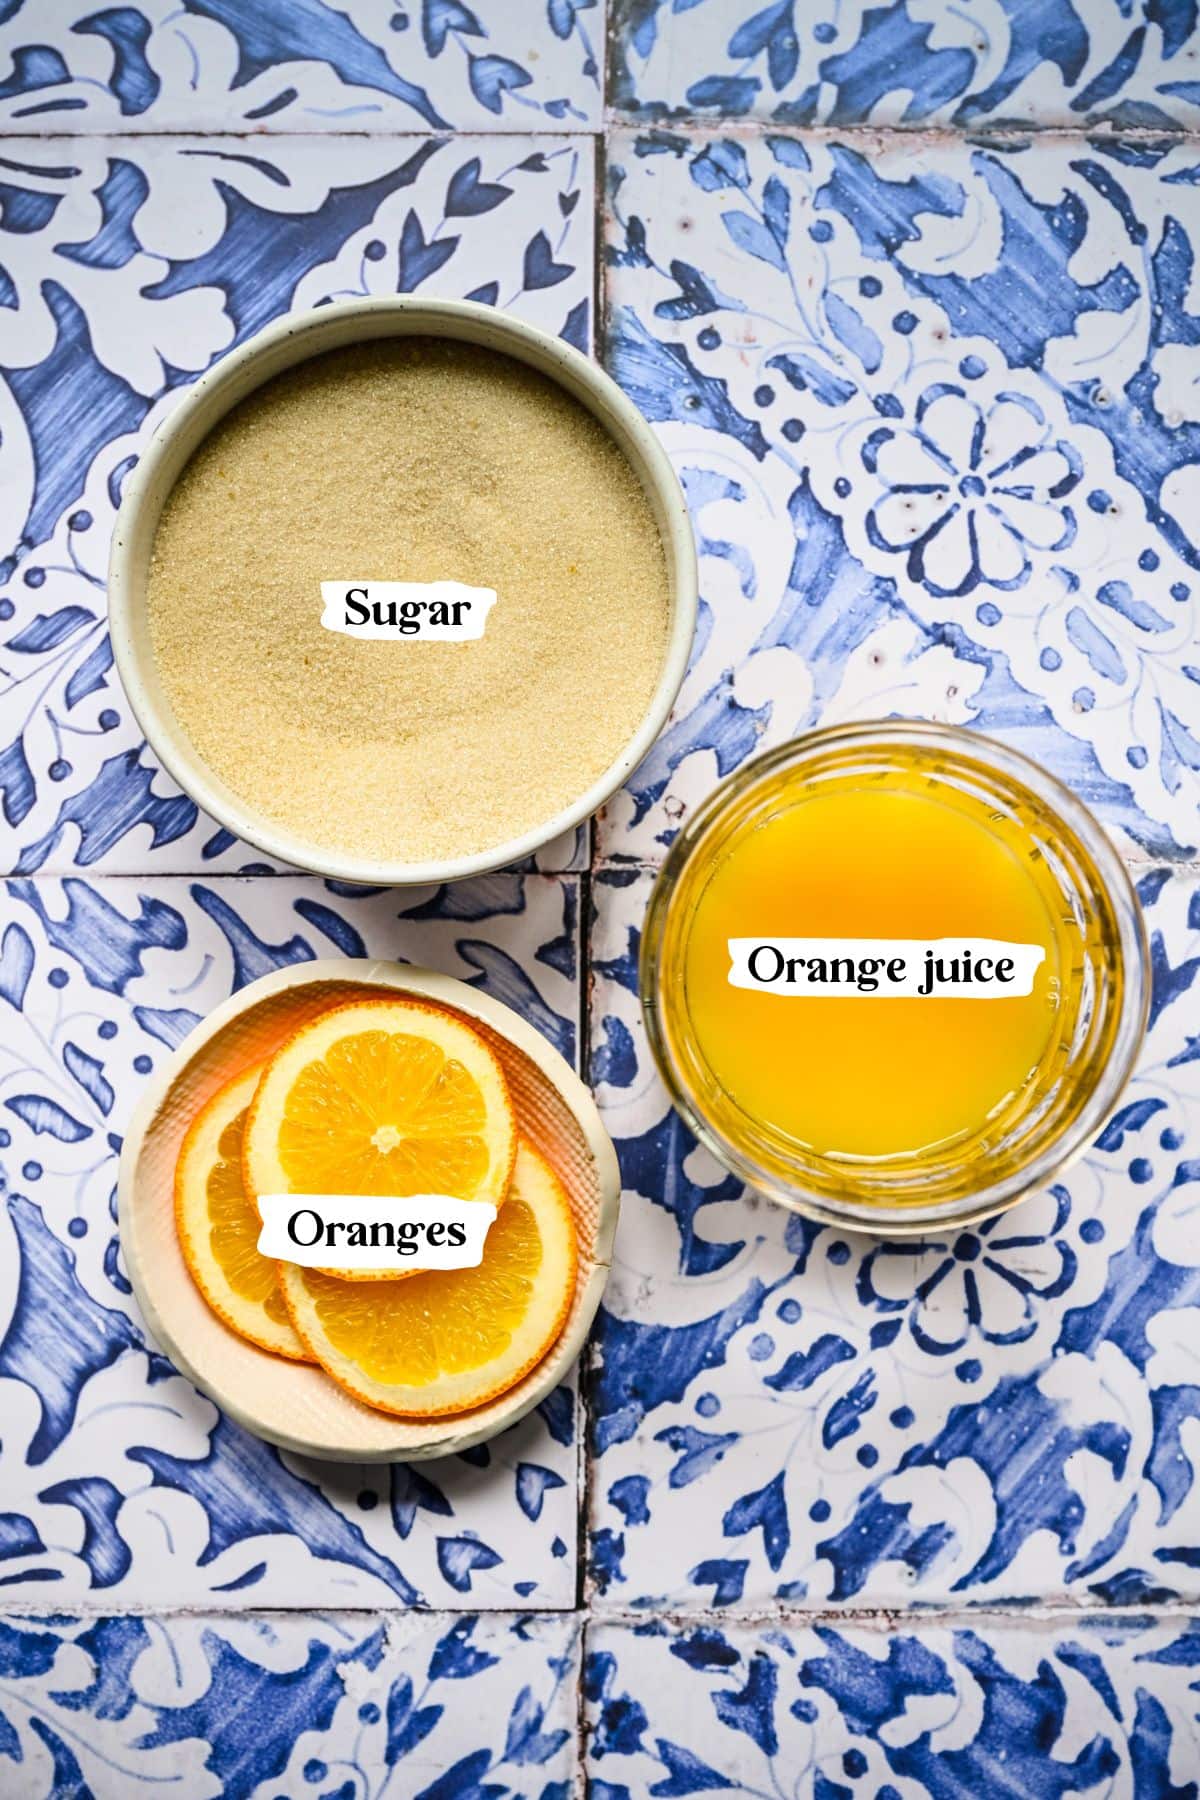 Orange simple syrup ingredients including orange juice and sugar.